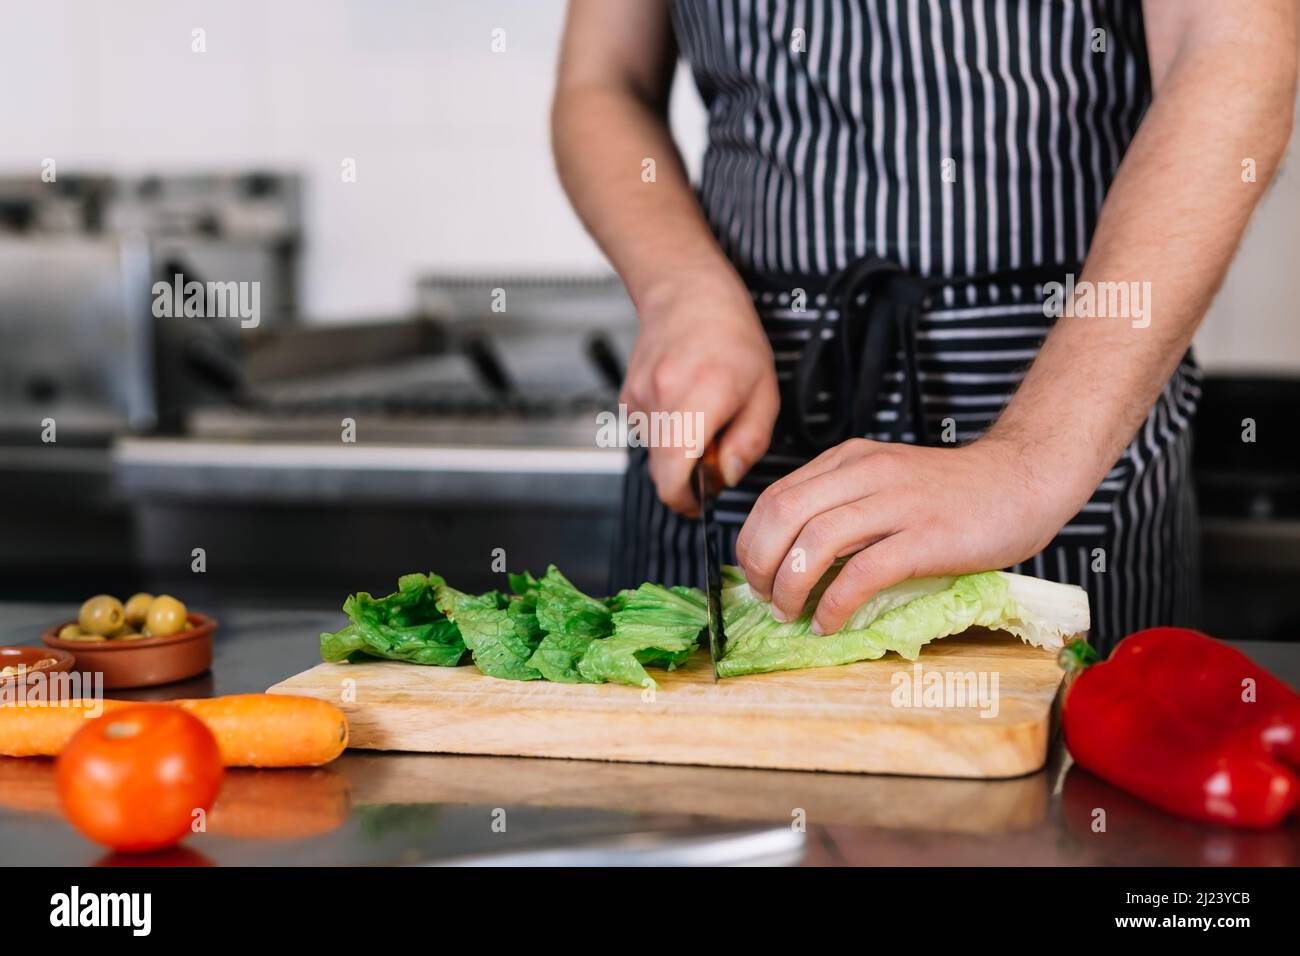 Detail der Hände eines jungen männlichen Chefs, der in einer professionellen Küche Lebensmittel schneidet Stockfoto